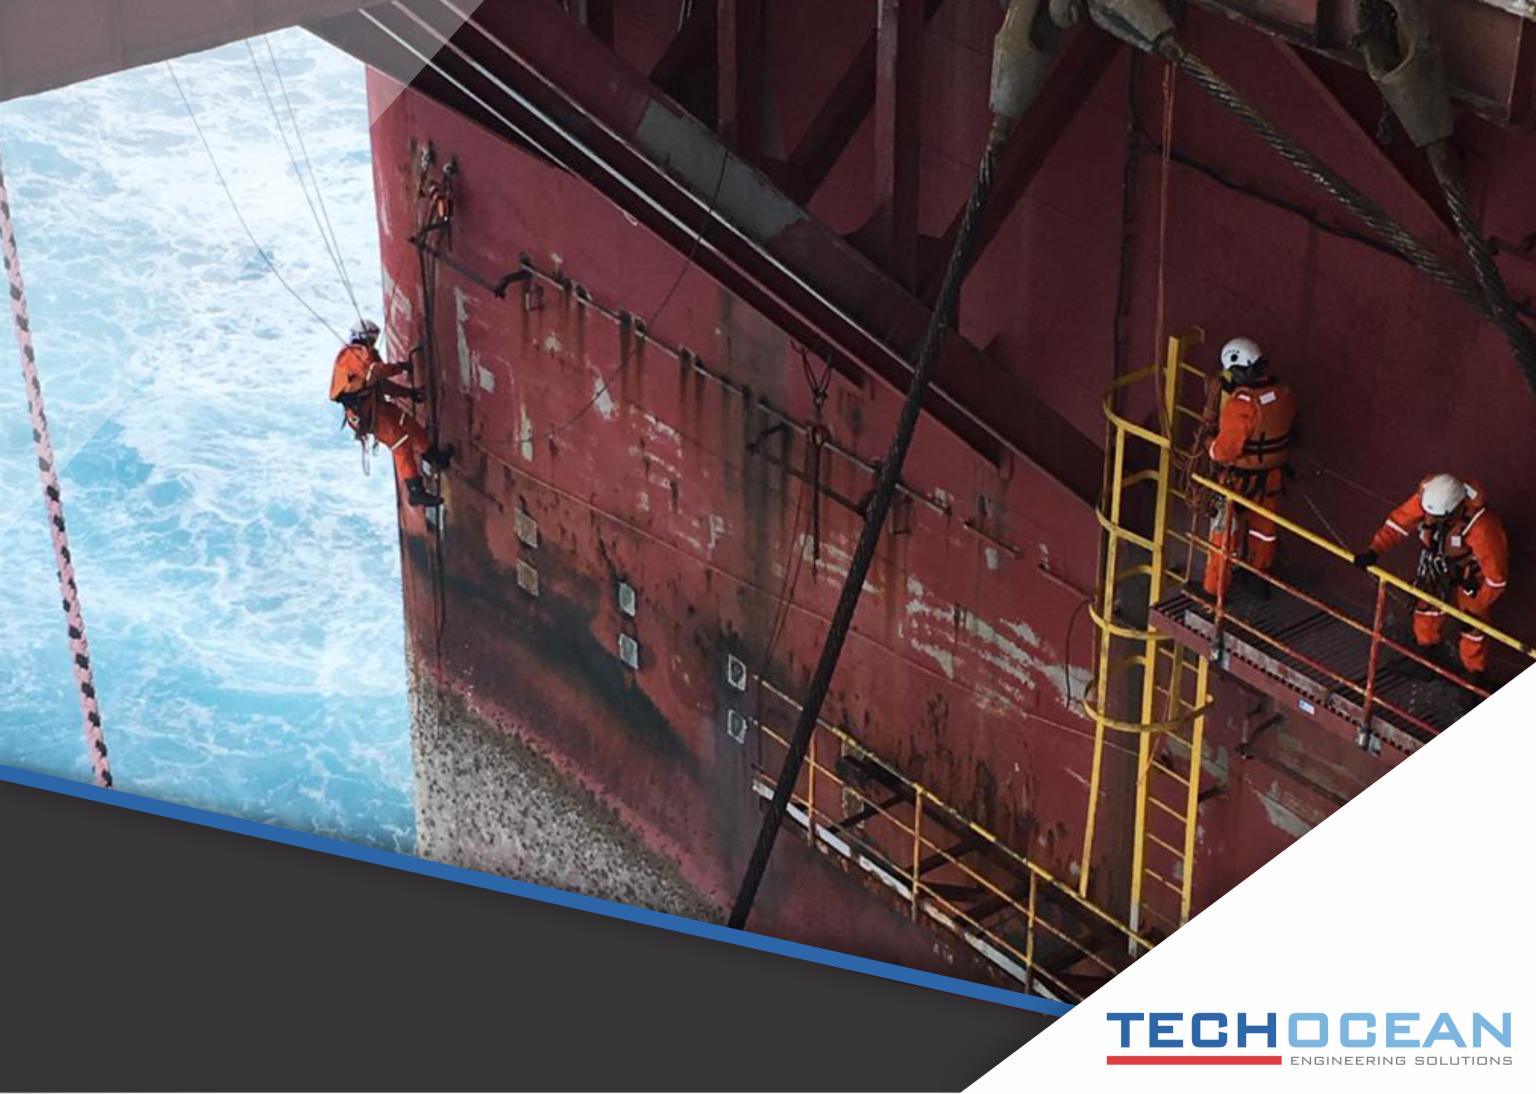 Uma das maiores empresas do ramo de reparo e manutenção naval recruta para trabalhar offshore em Macaé